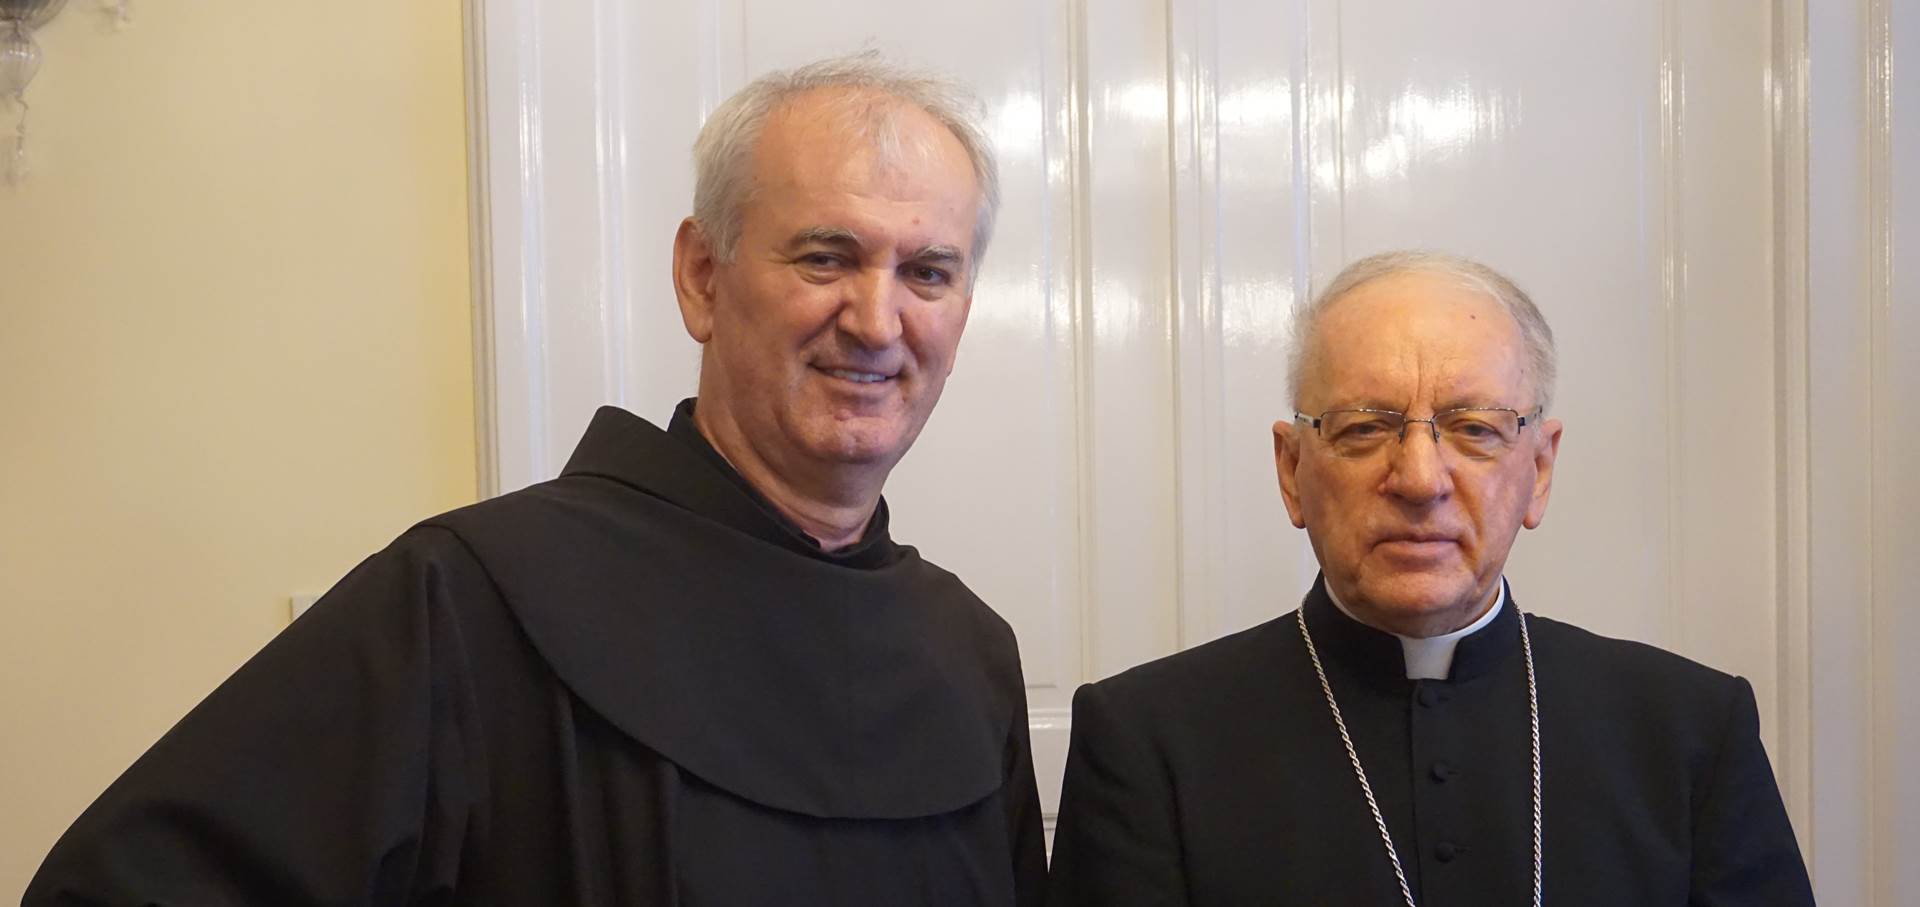 Požega.eu | Biskup Škvorčević primio novog provincijala Hercegovačke franjevačke provincije